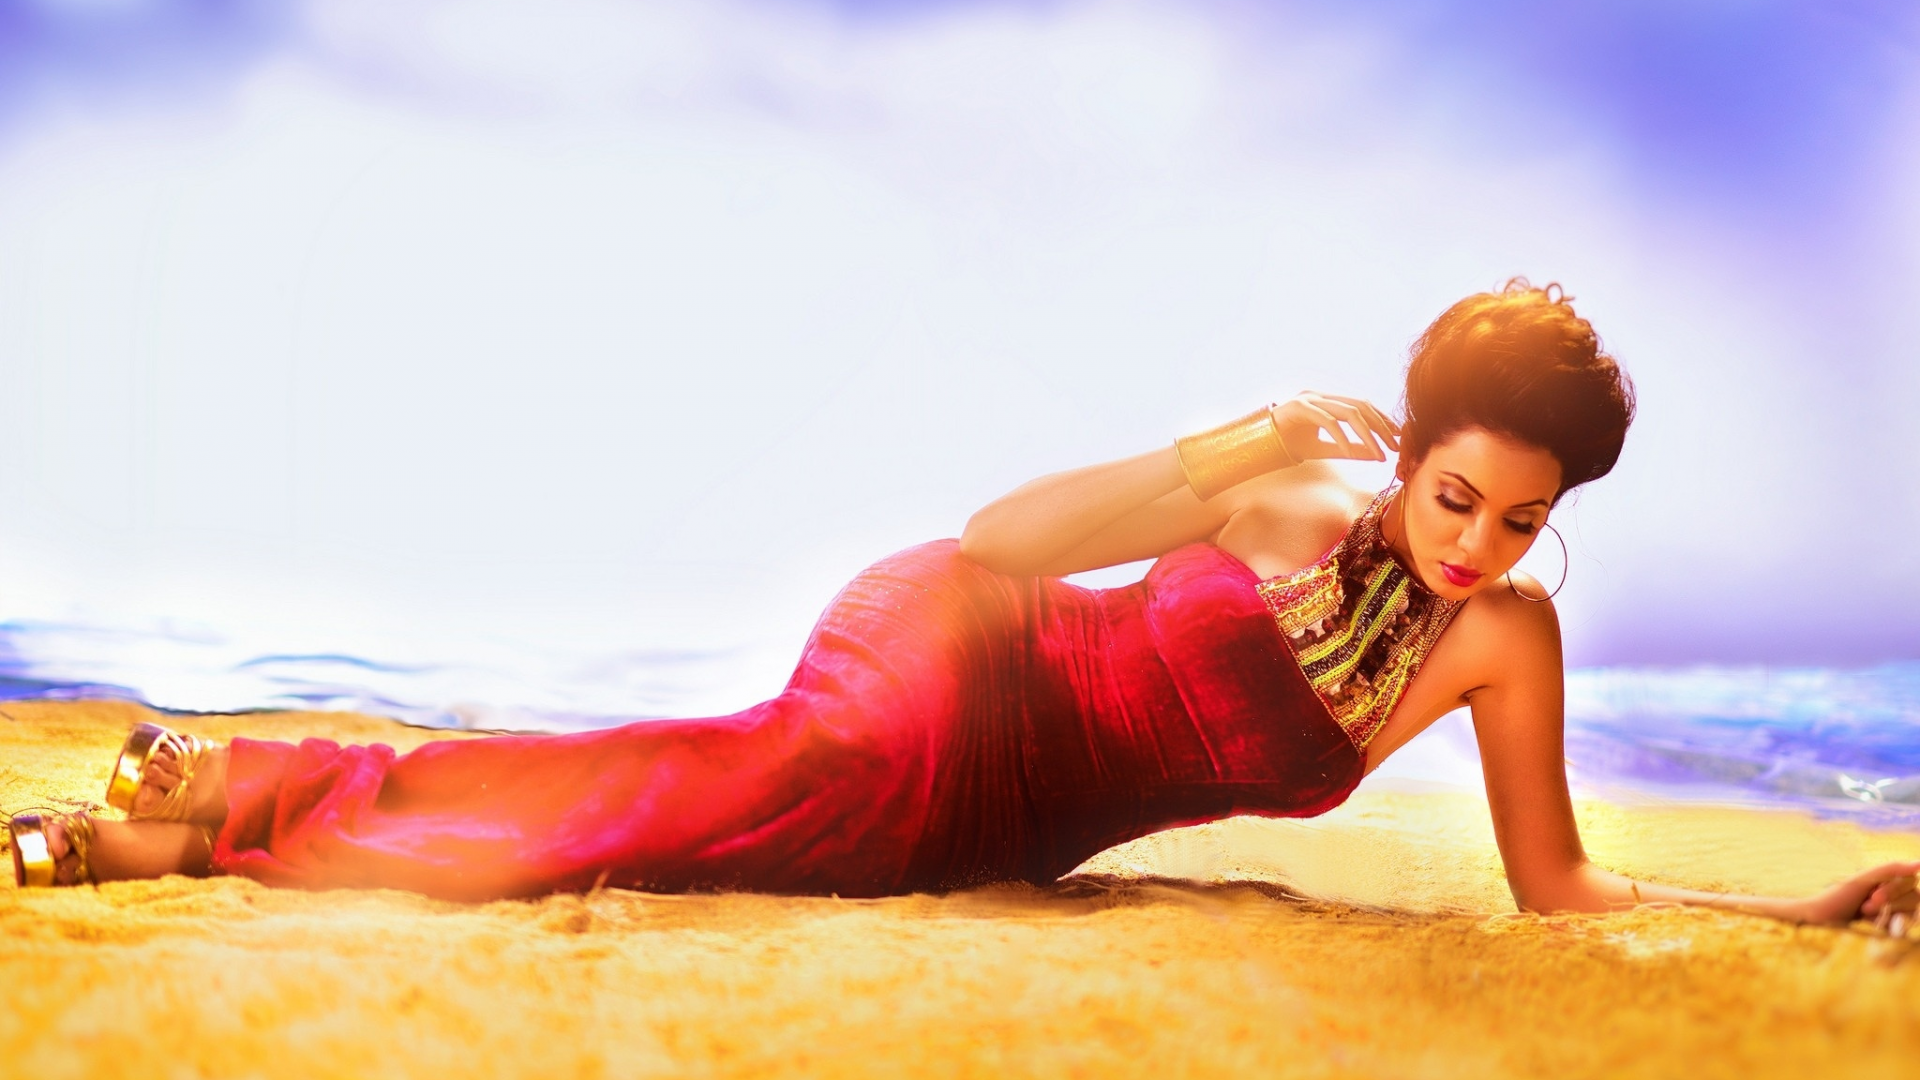 malvika rallan, песок, красное платье, девушка, модель